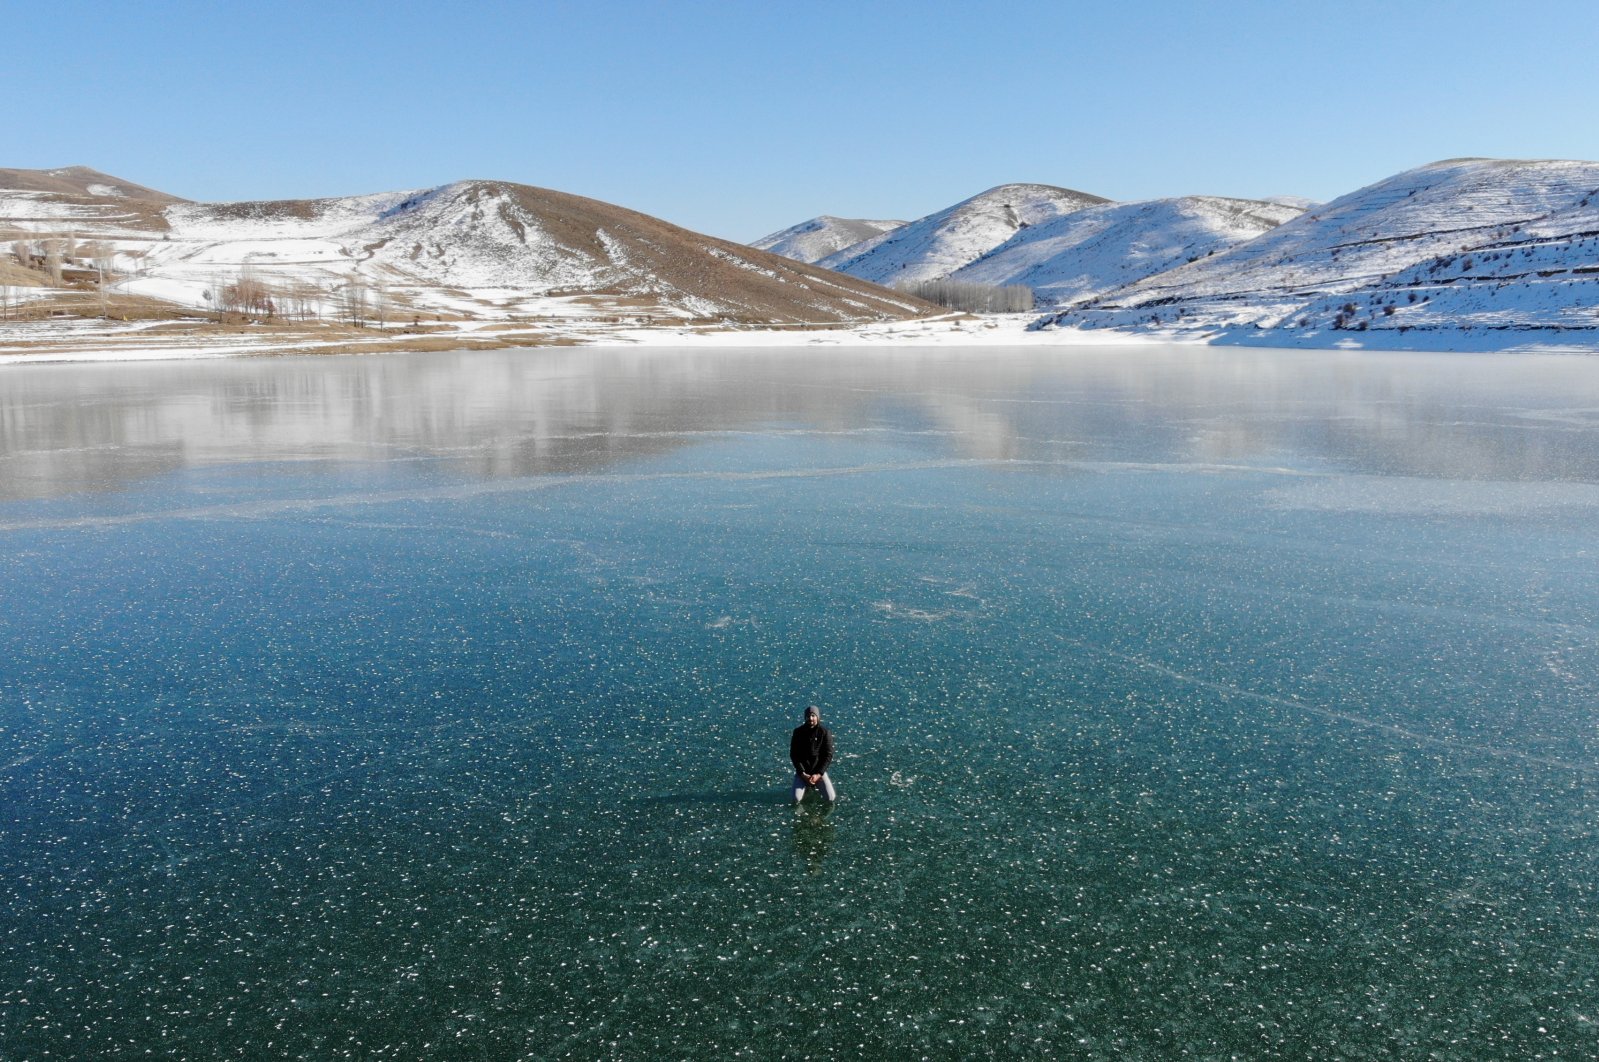 Gökçedere Dam Lake, frozen during the winter, offers a fascinating, picturesque landscape, Bayburt, northeastern Turkey, Jan. 6, 2021. (AA Photo)